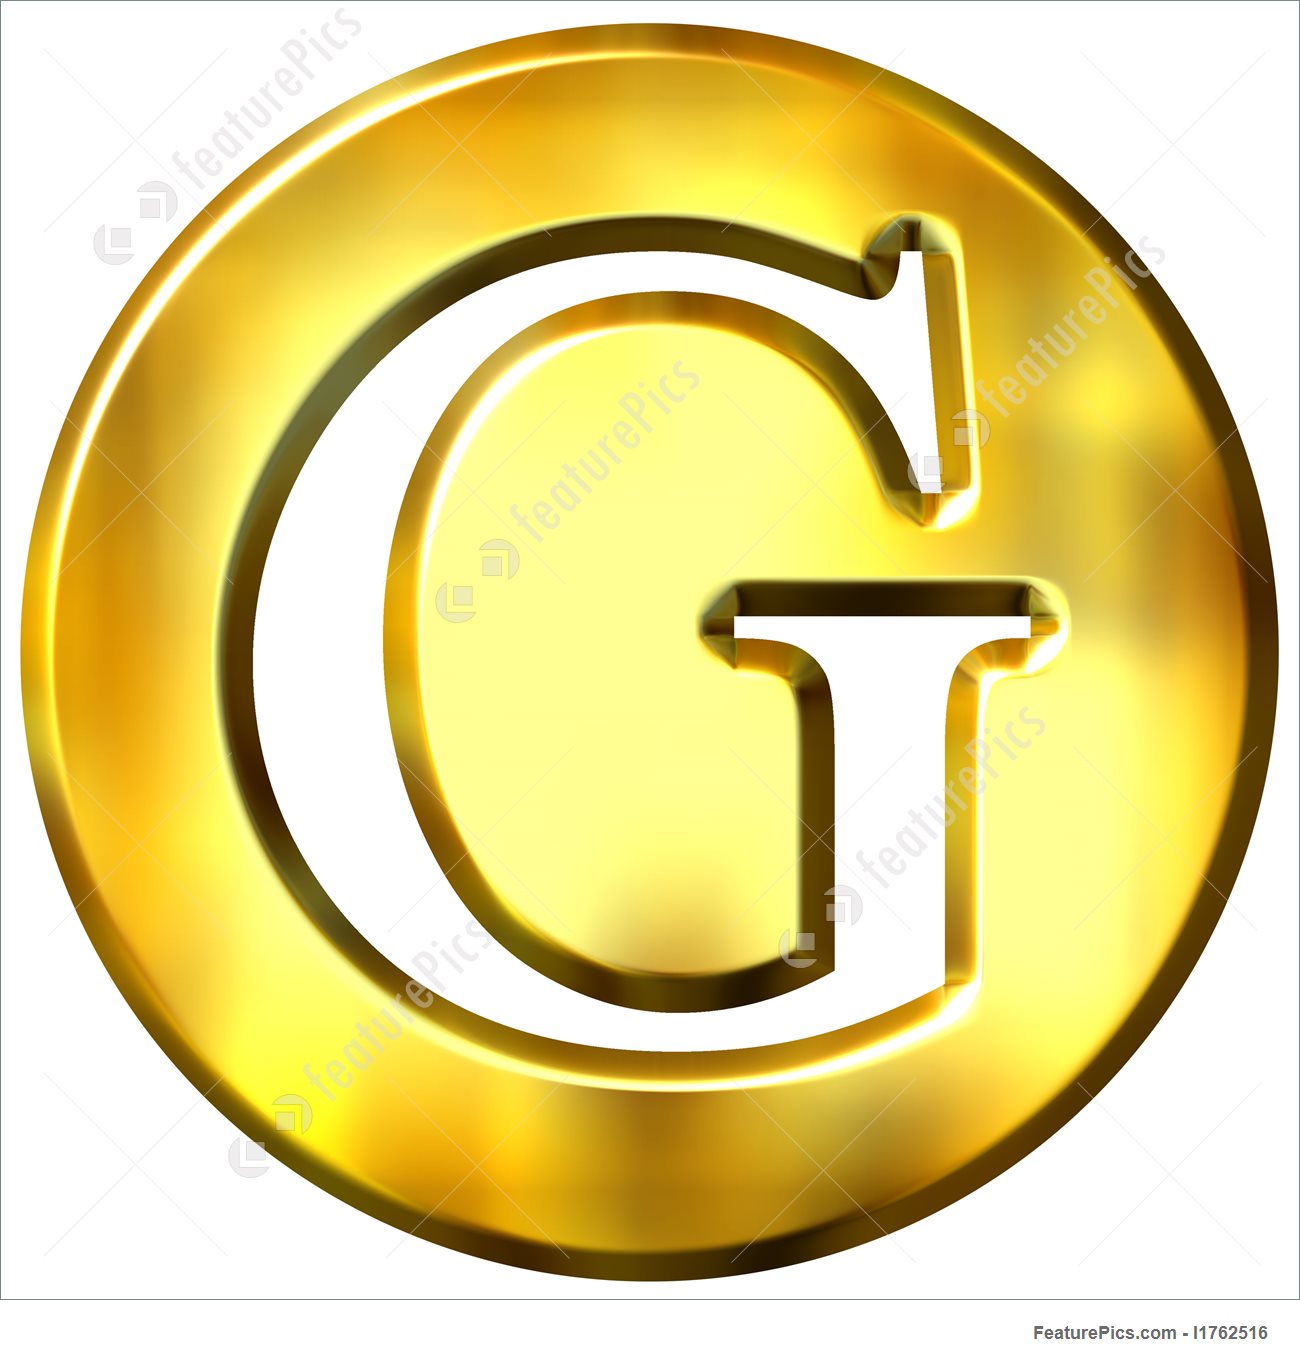 3D Golden Letter G Illustration